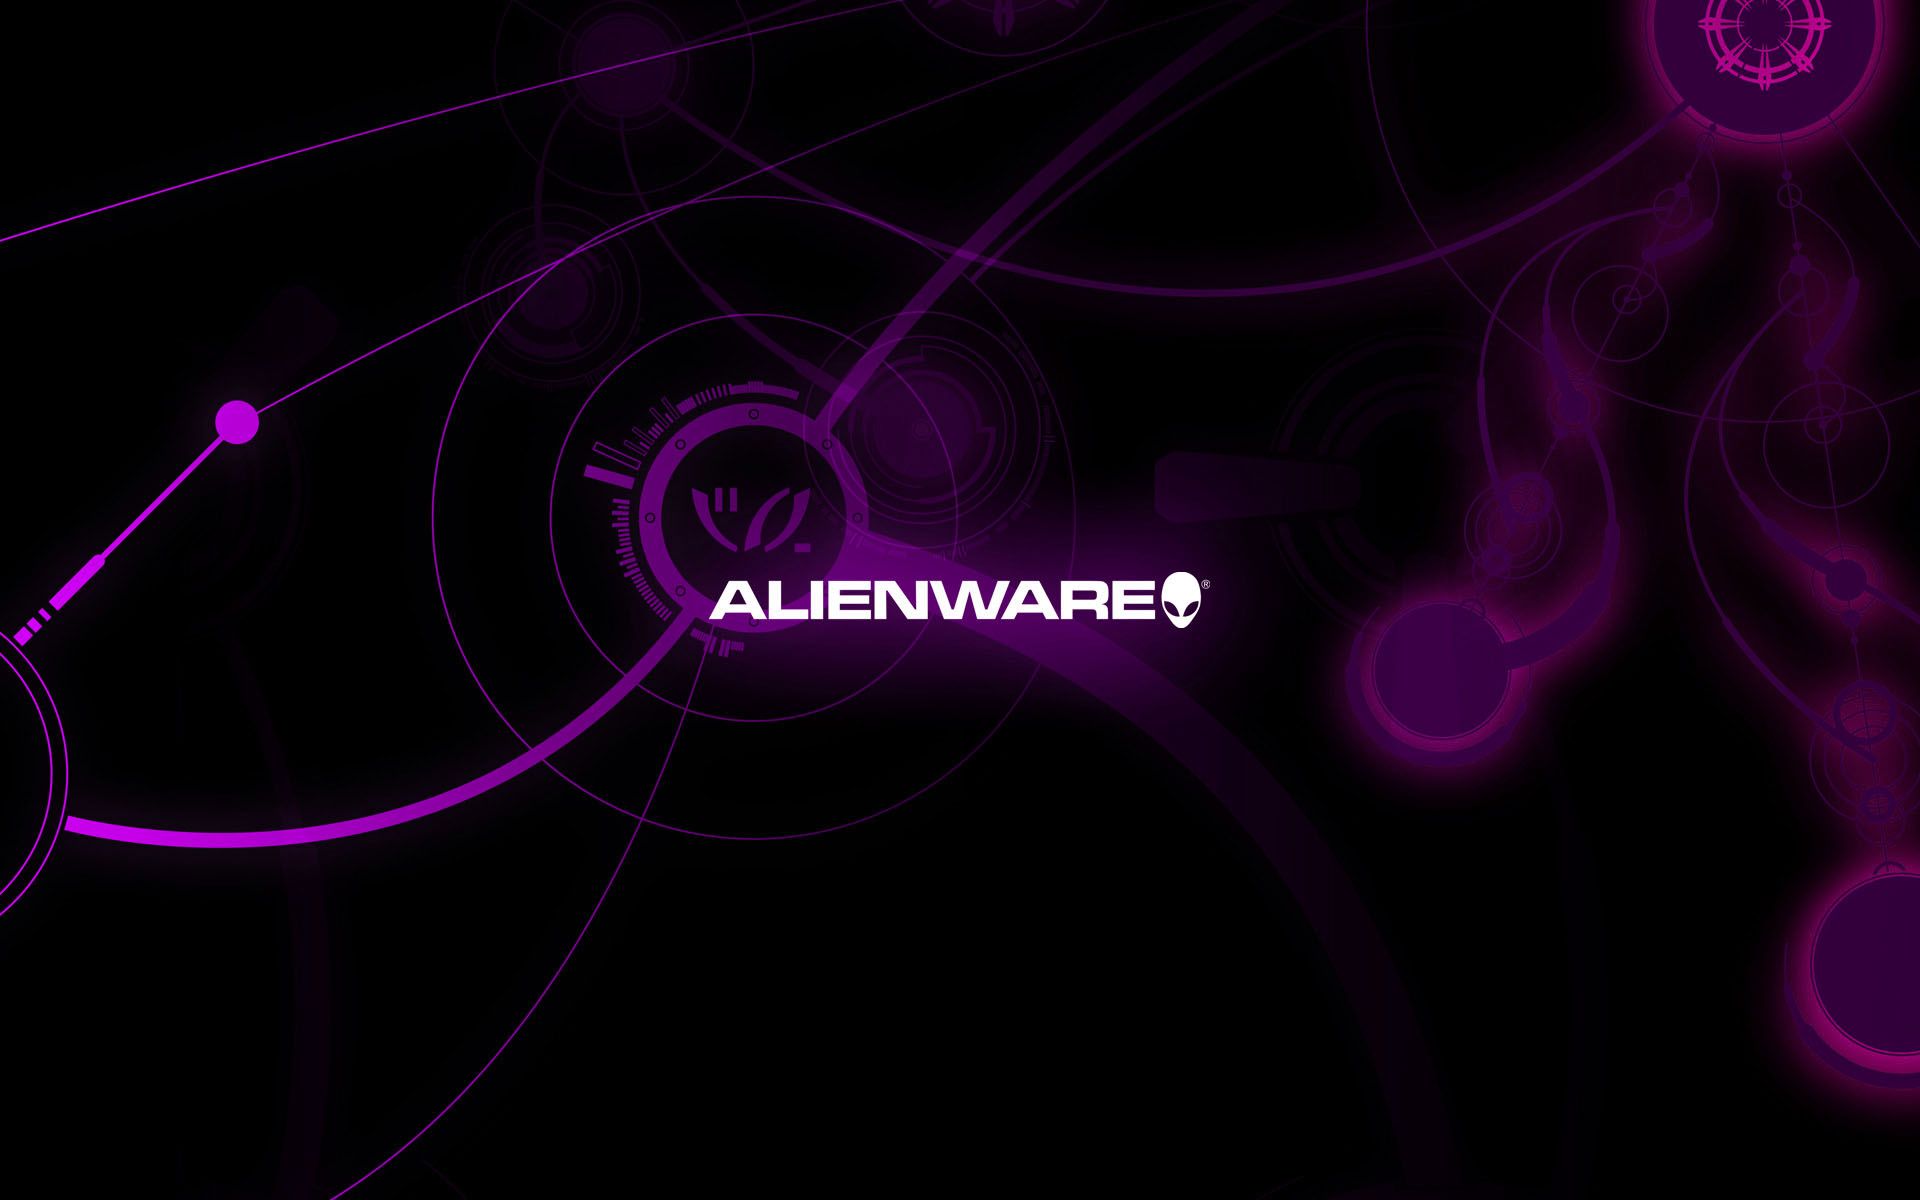 Alienware Purple Wallpapers